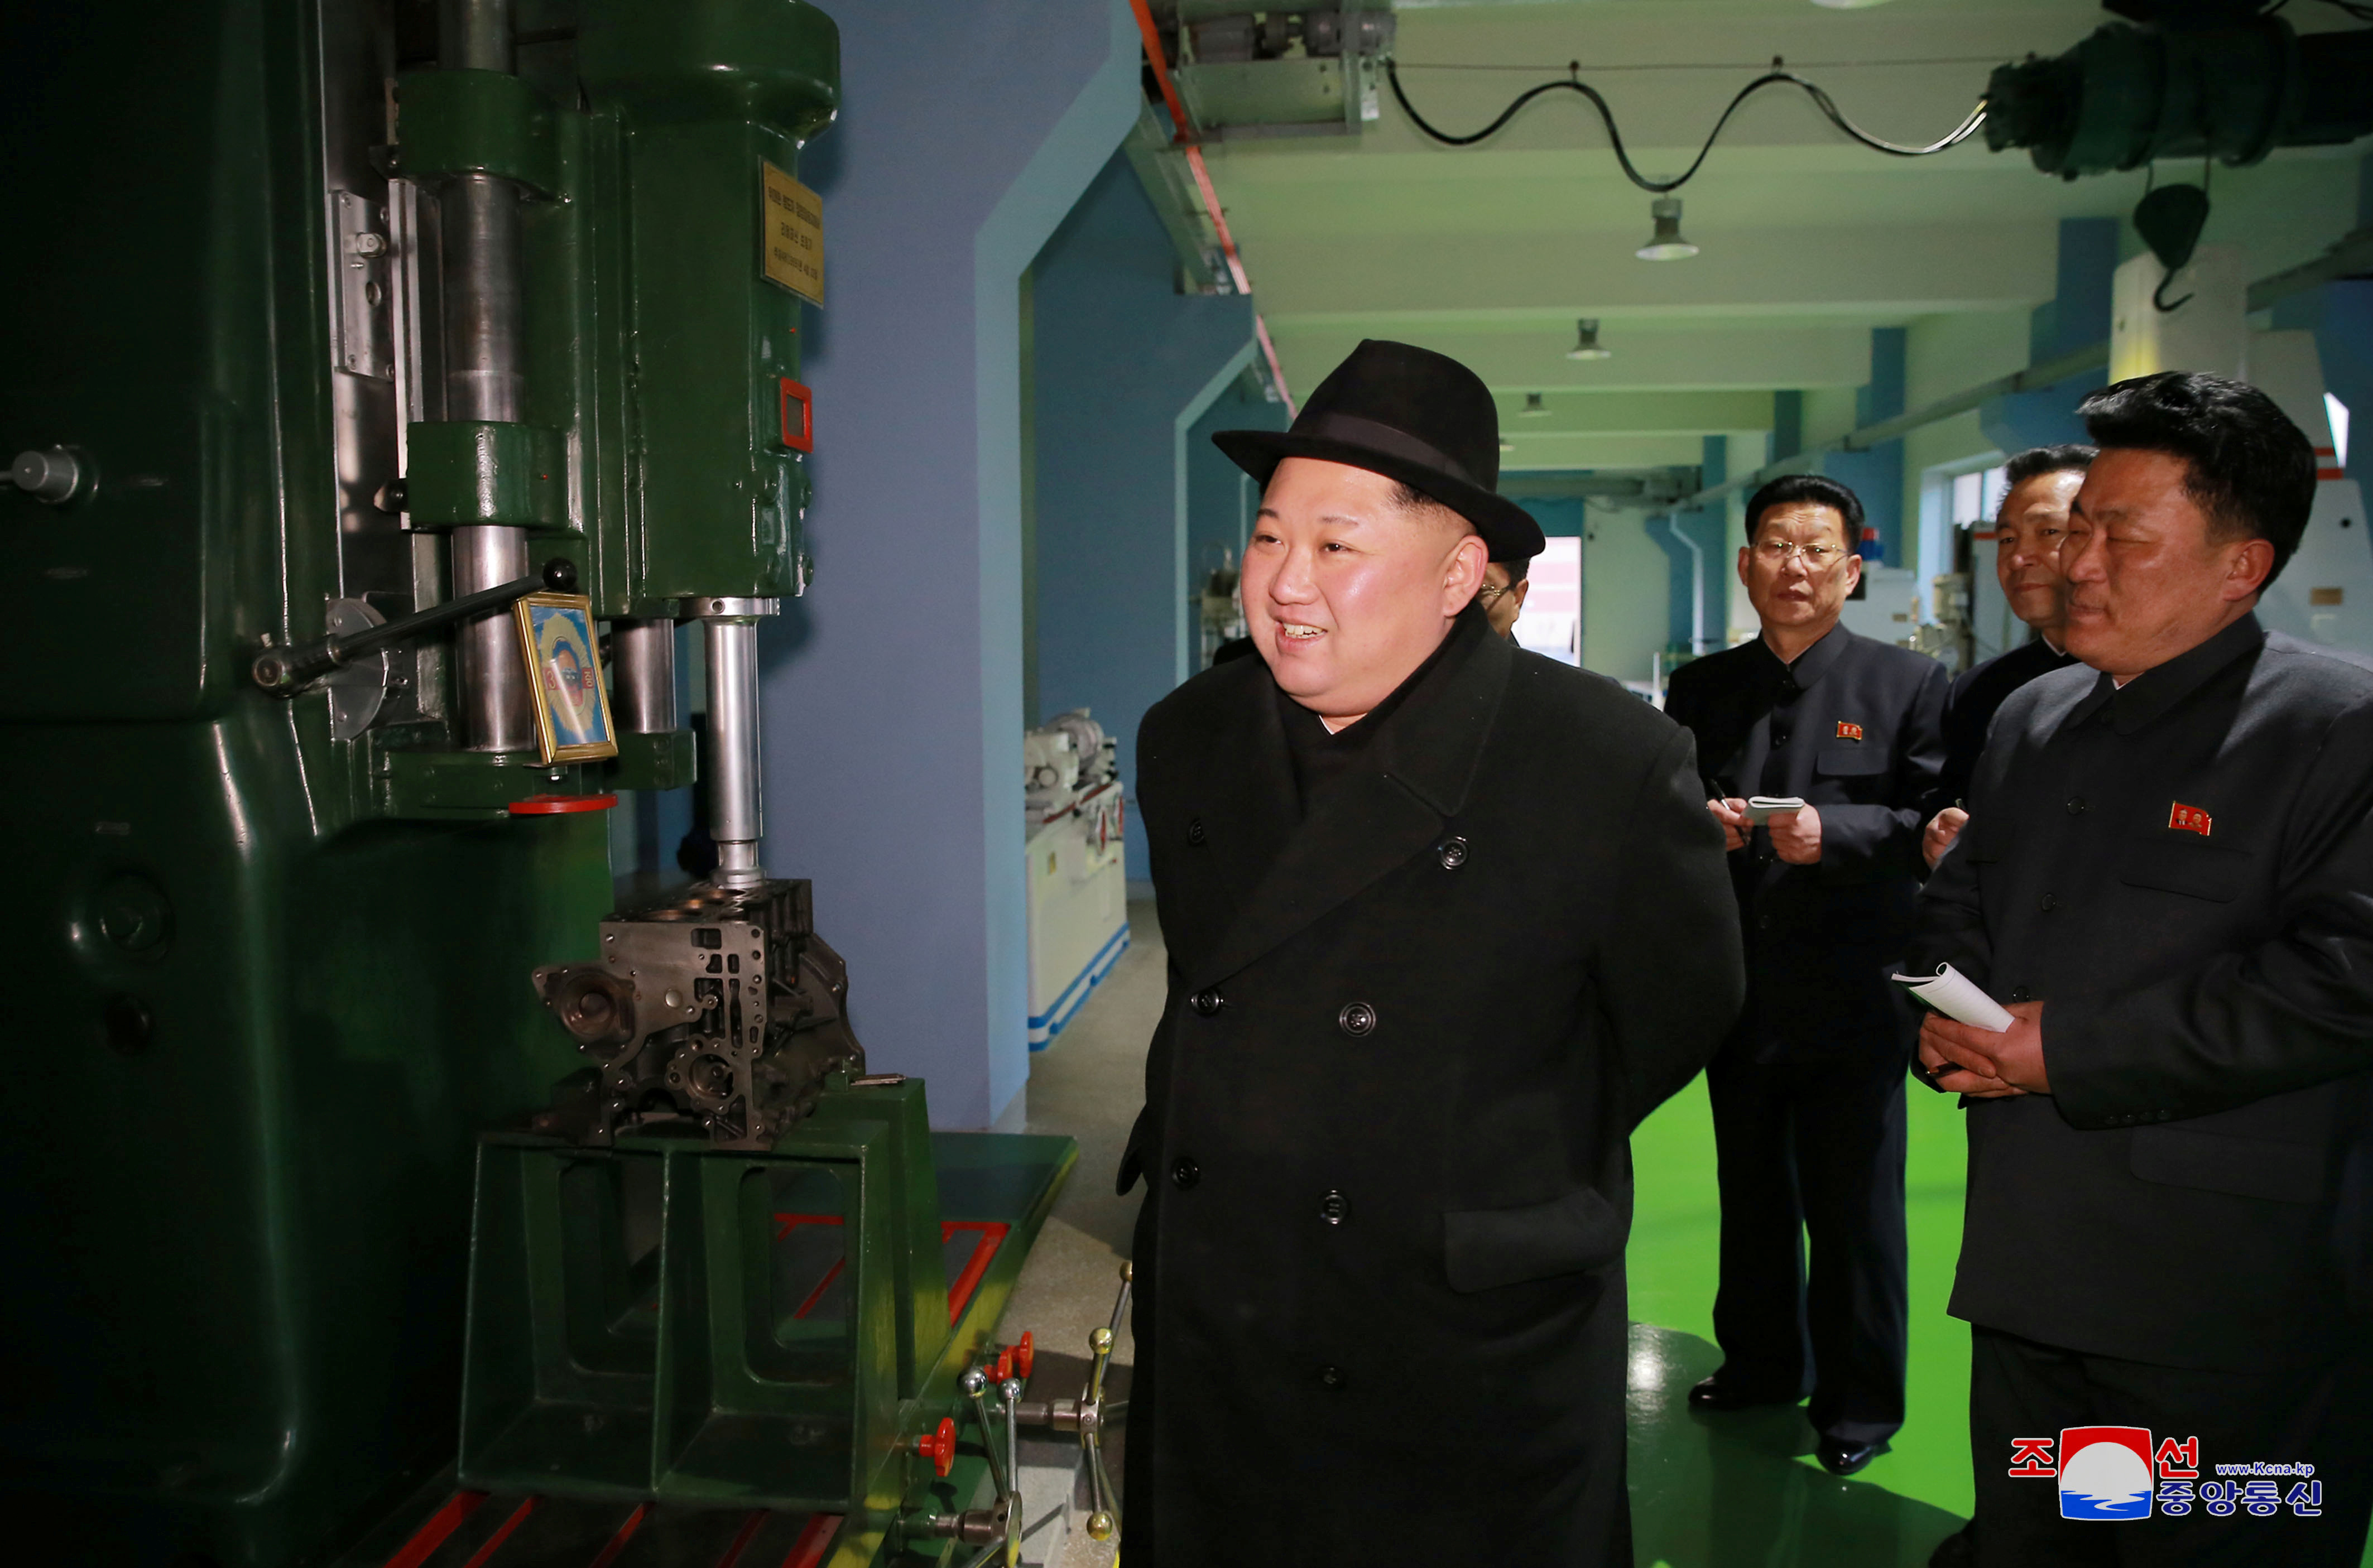 زعيم كوريا الشمالية داخل مصنع للحافلات